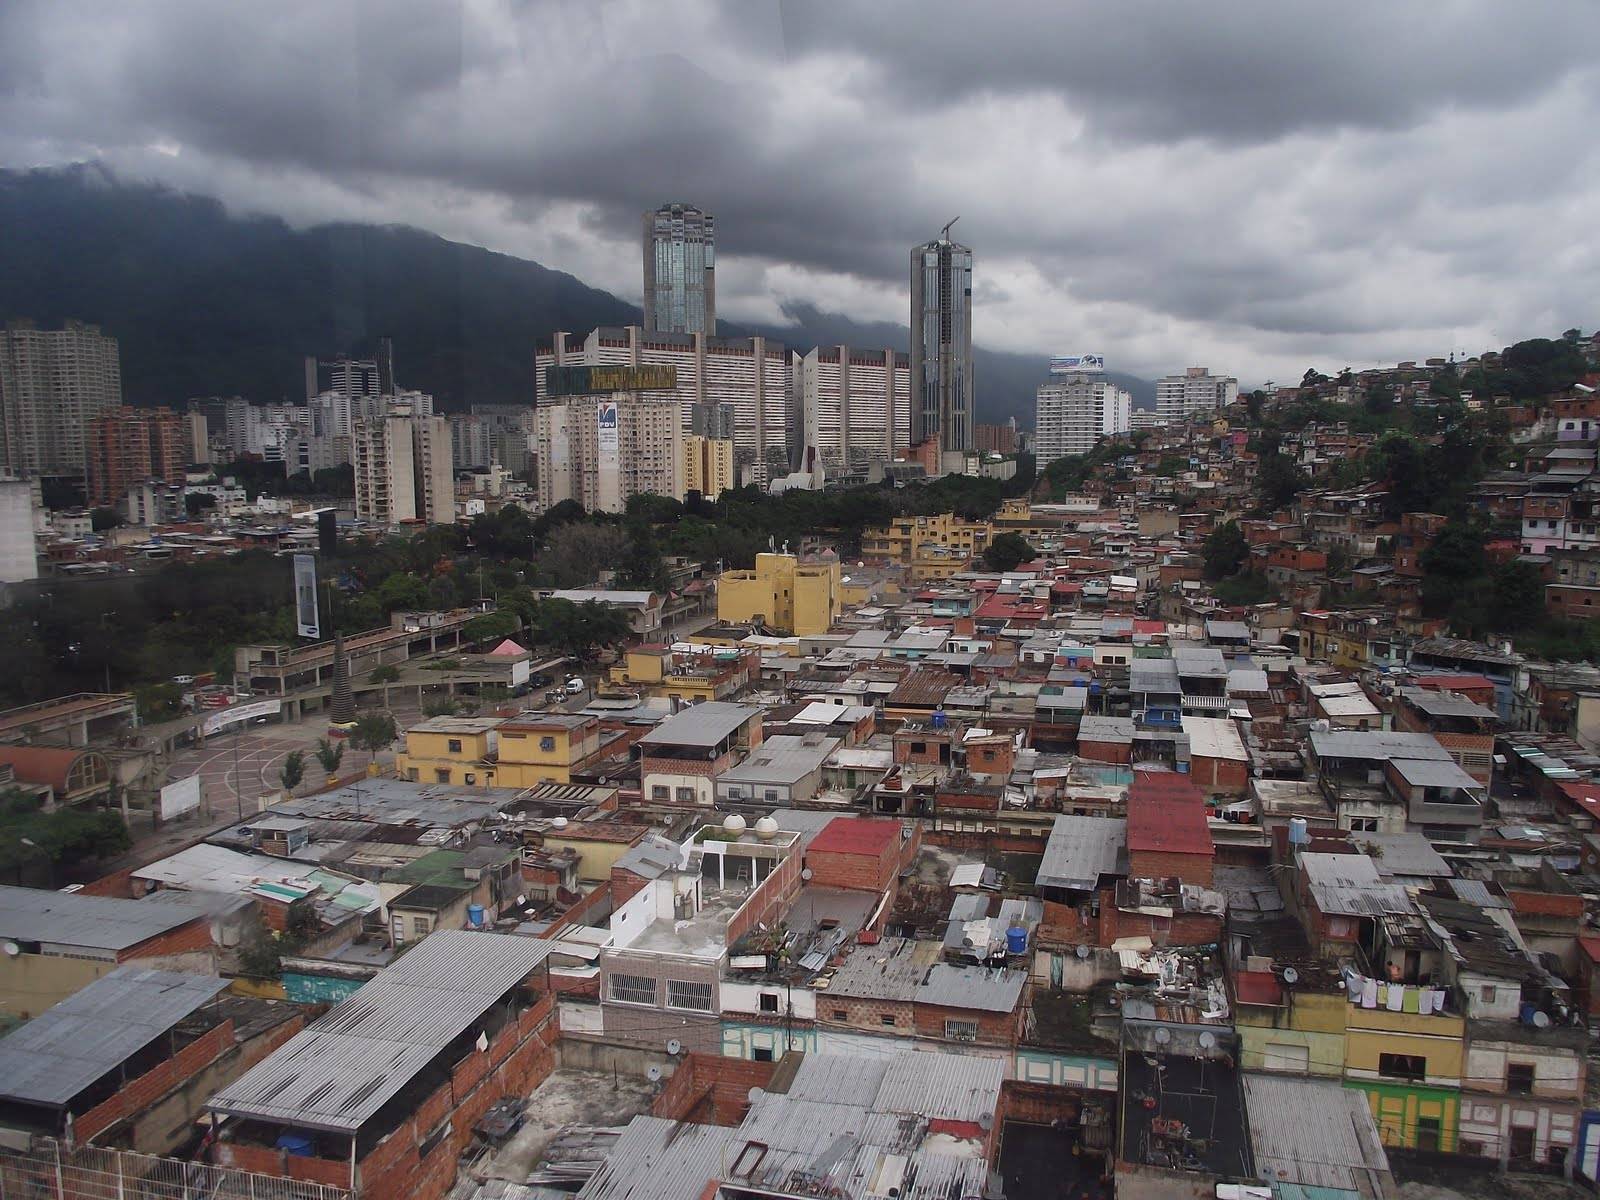 Ciudad de Caracas